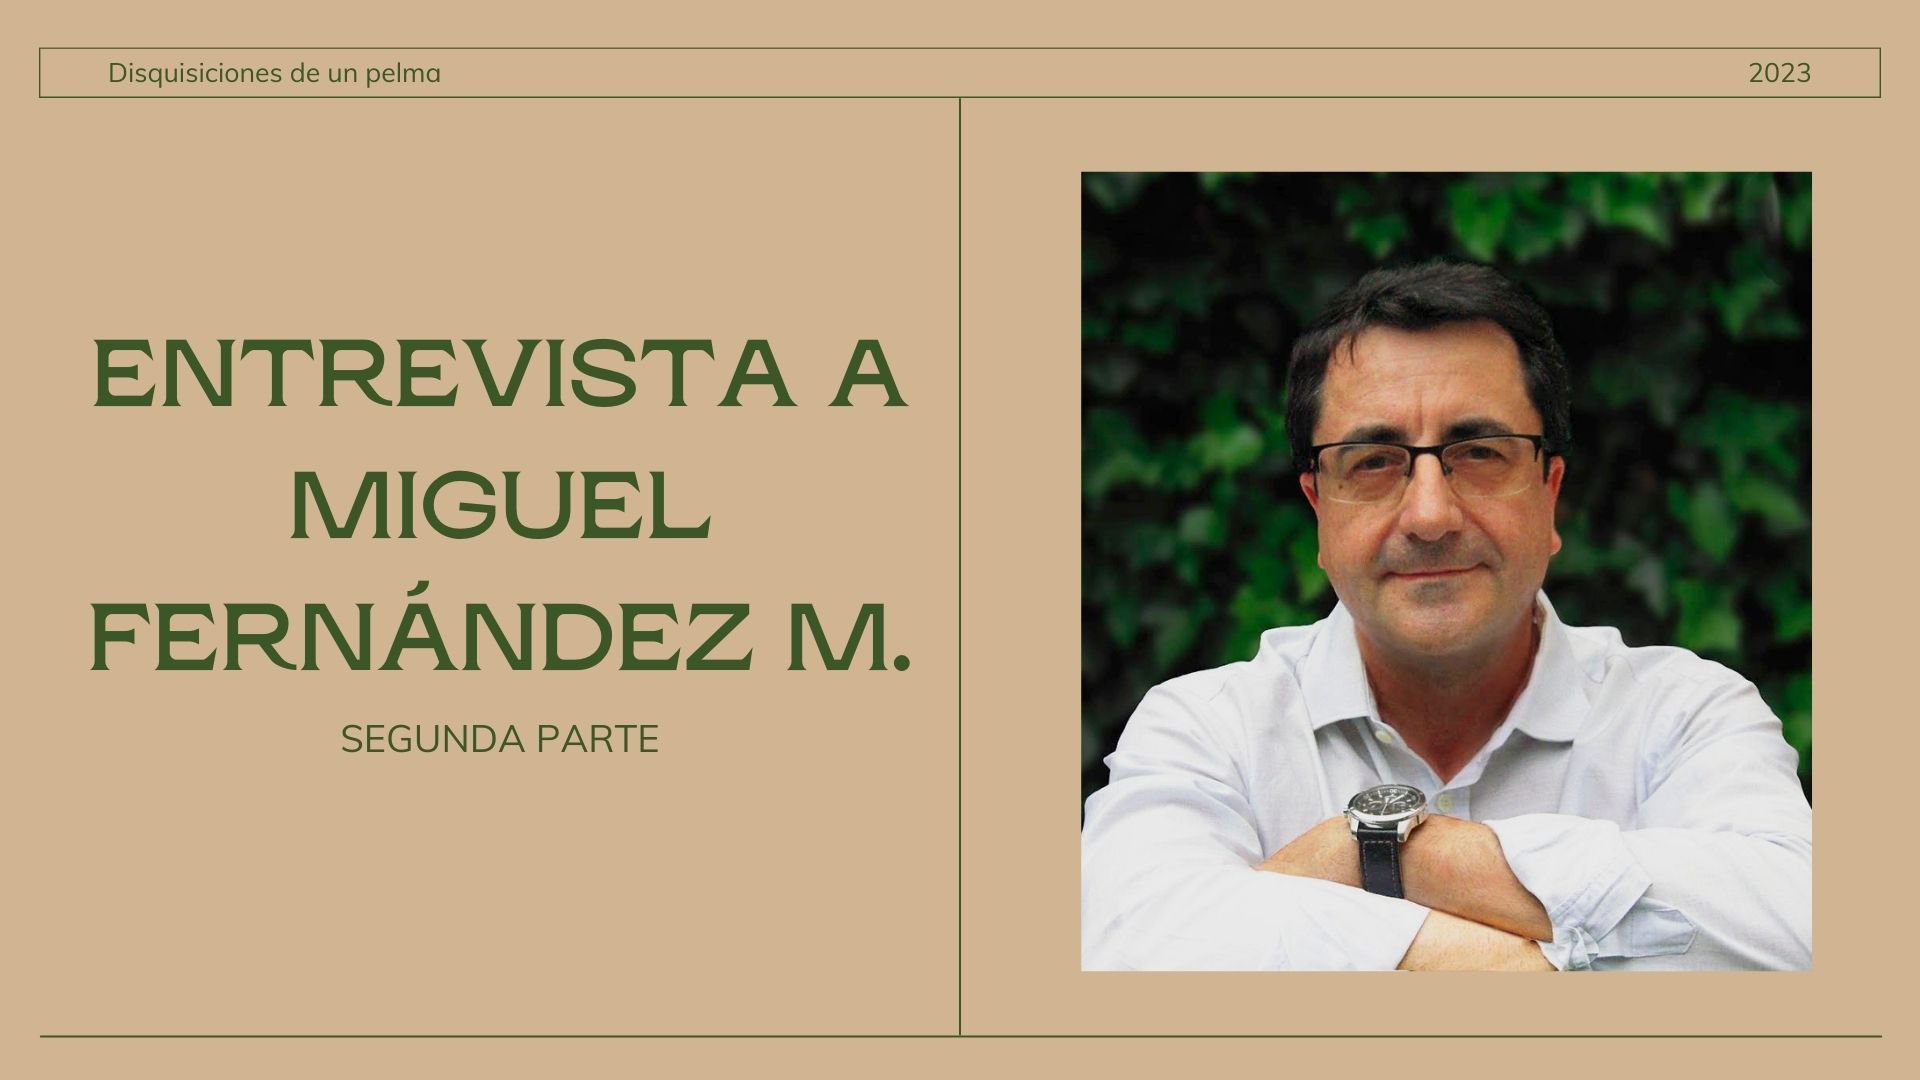 ENTREVISTA A MIGUEL FERNÁNDEZ M.: AUTOR DE DISQUISICIONES DE UN PELMA (SEGUNDA PARTE)